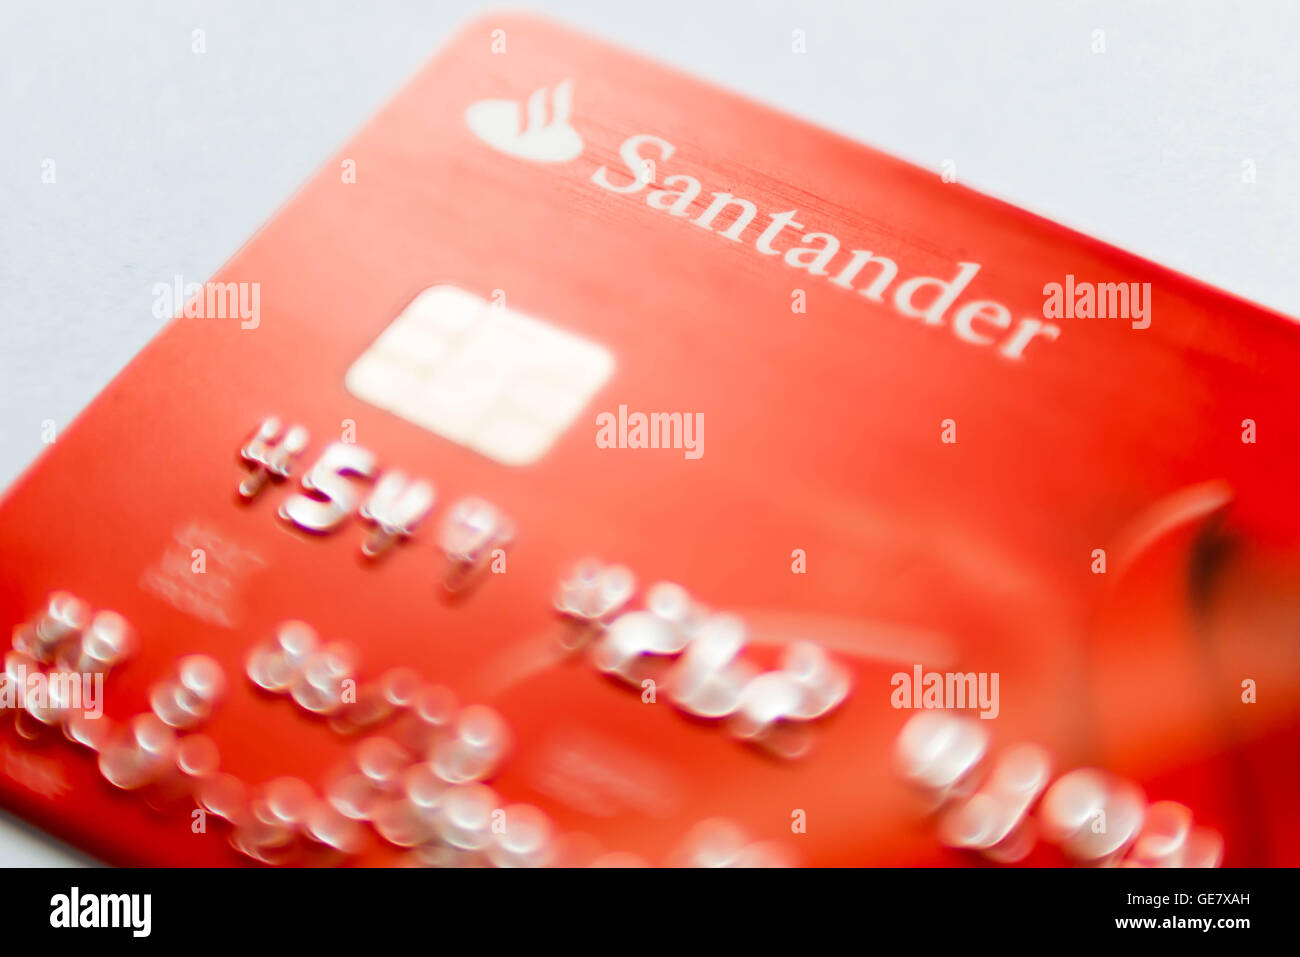 Santander bank card detail Stock Photo